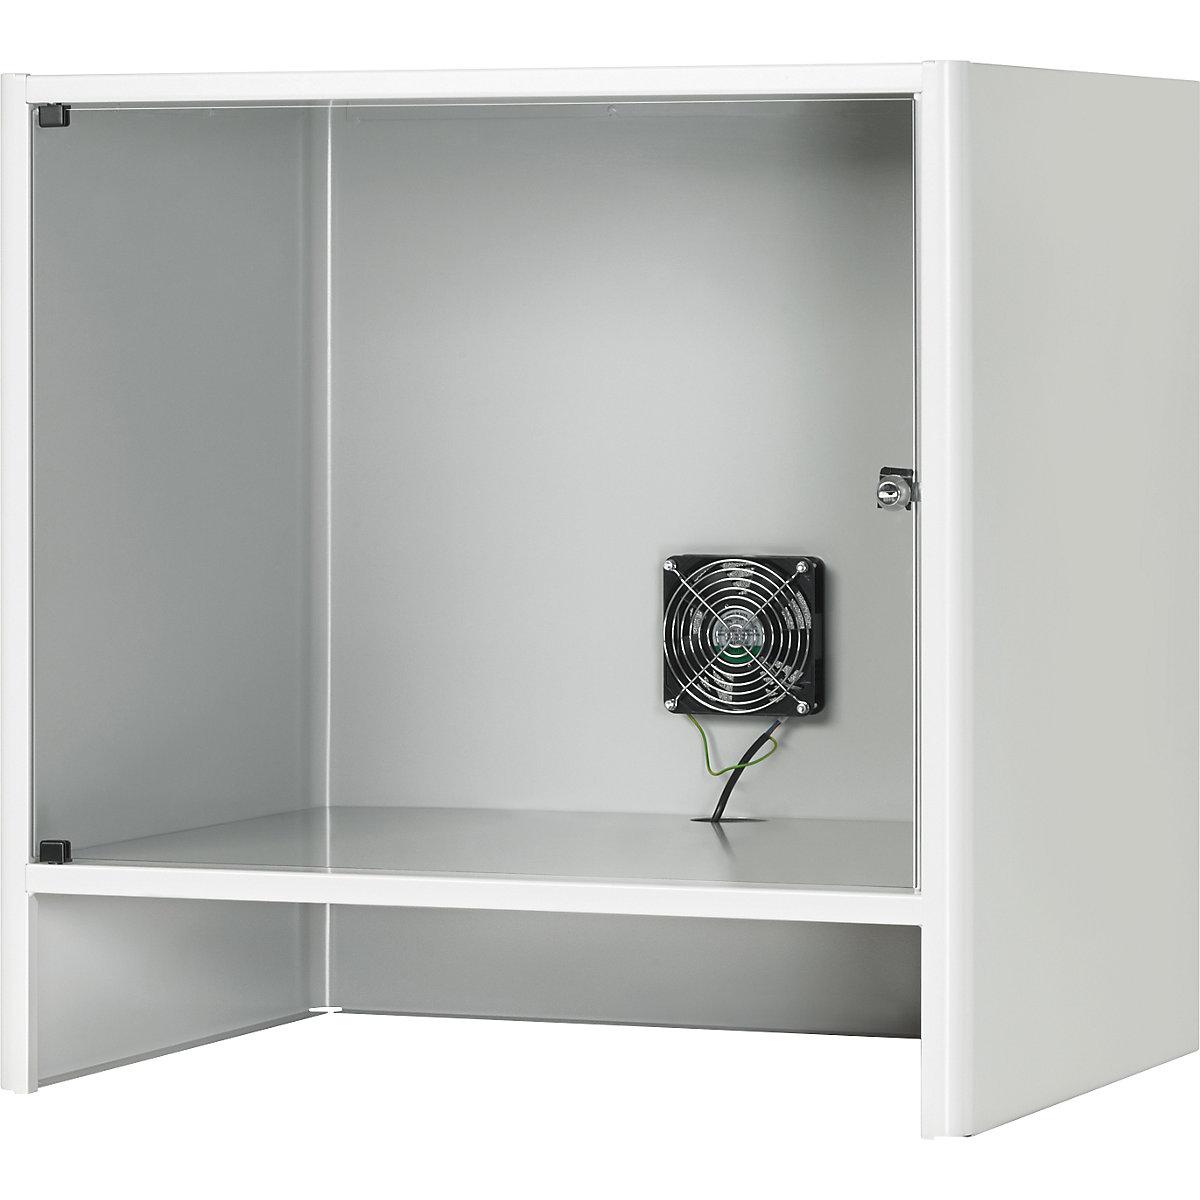 Compartimento para monitor con ventilación activa integrada – RAU, H x A x P 710 x 720 x 550 mm, gris luminoso RAL 7035-3